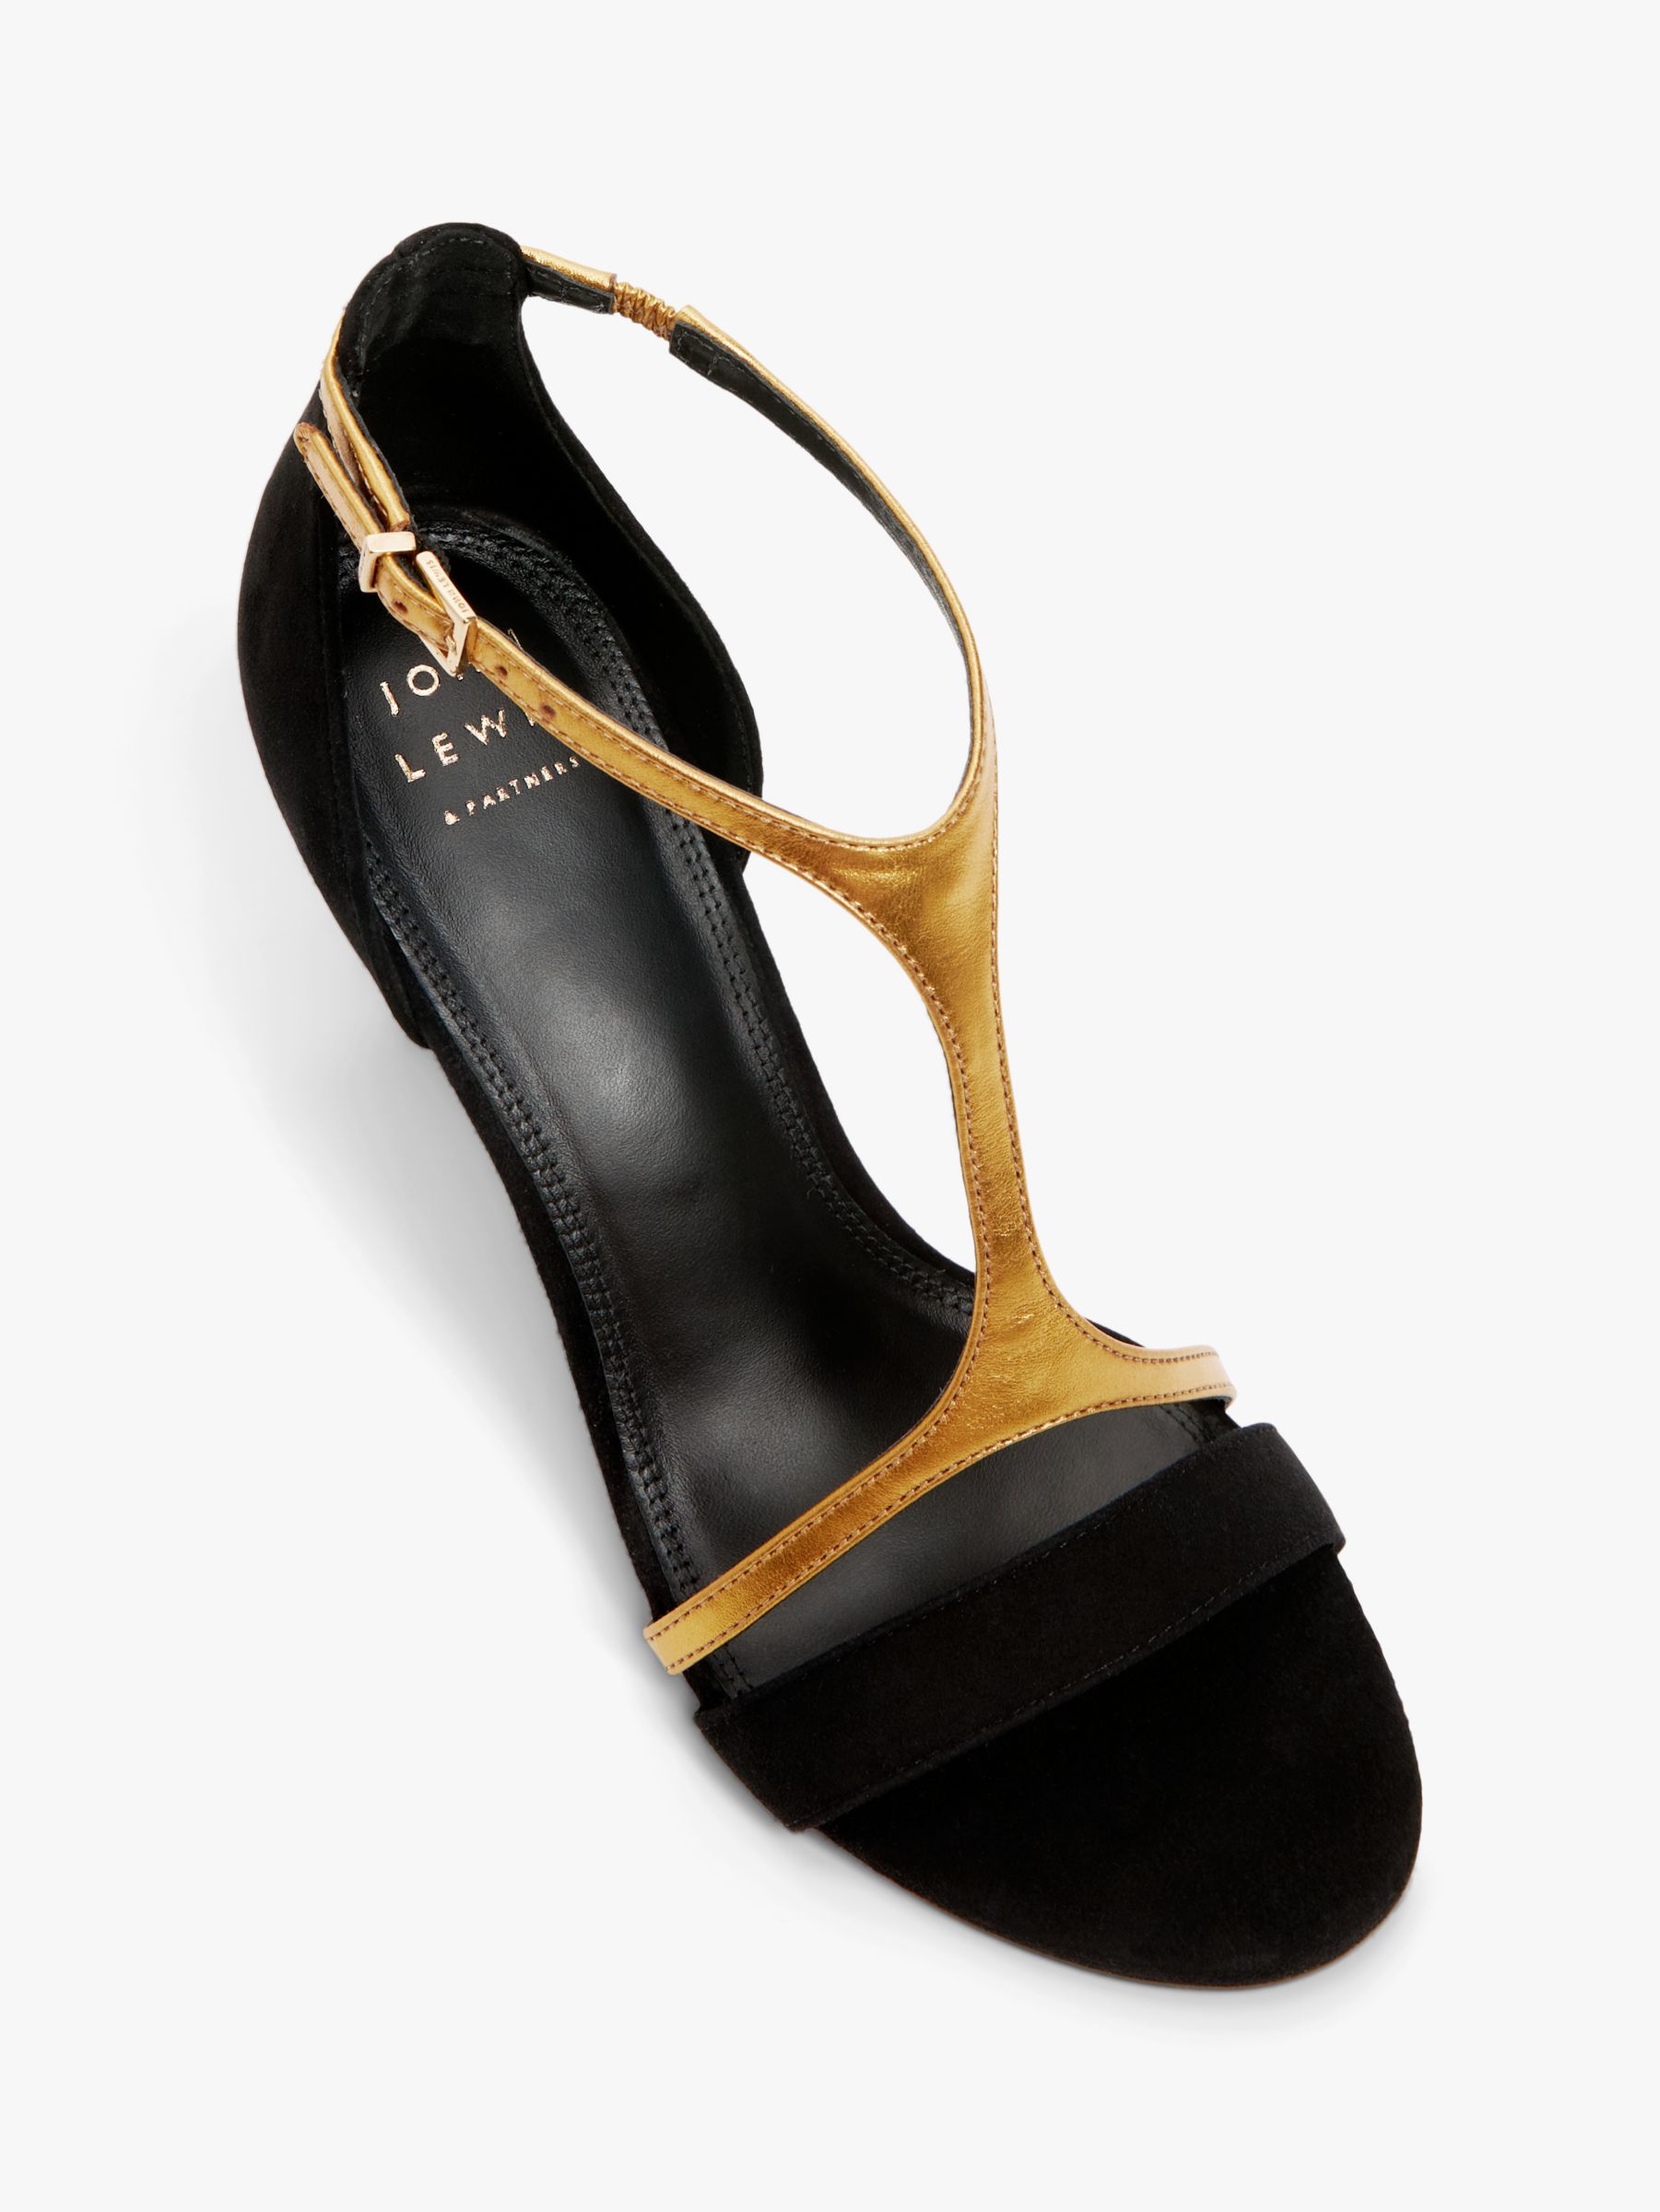 John Lewis Maryland Suede High Heel Dressy T-Bar Sandals, Black/Gold, 3